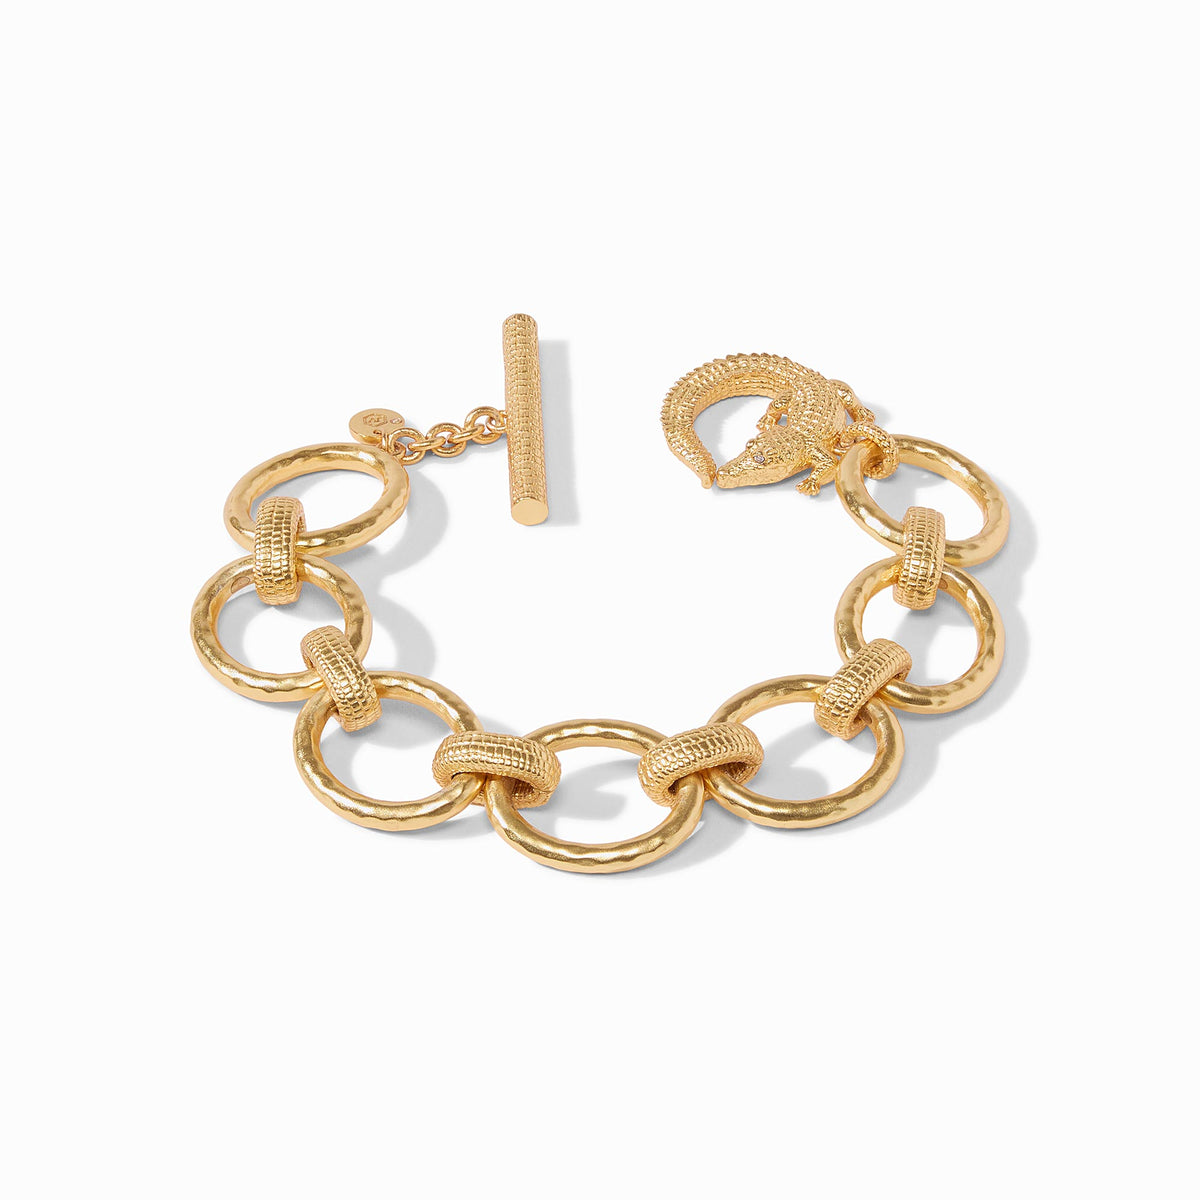 Julie Vos - Alligator Link Bracelet, Gold